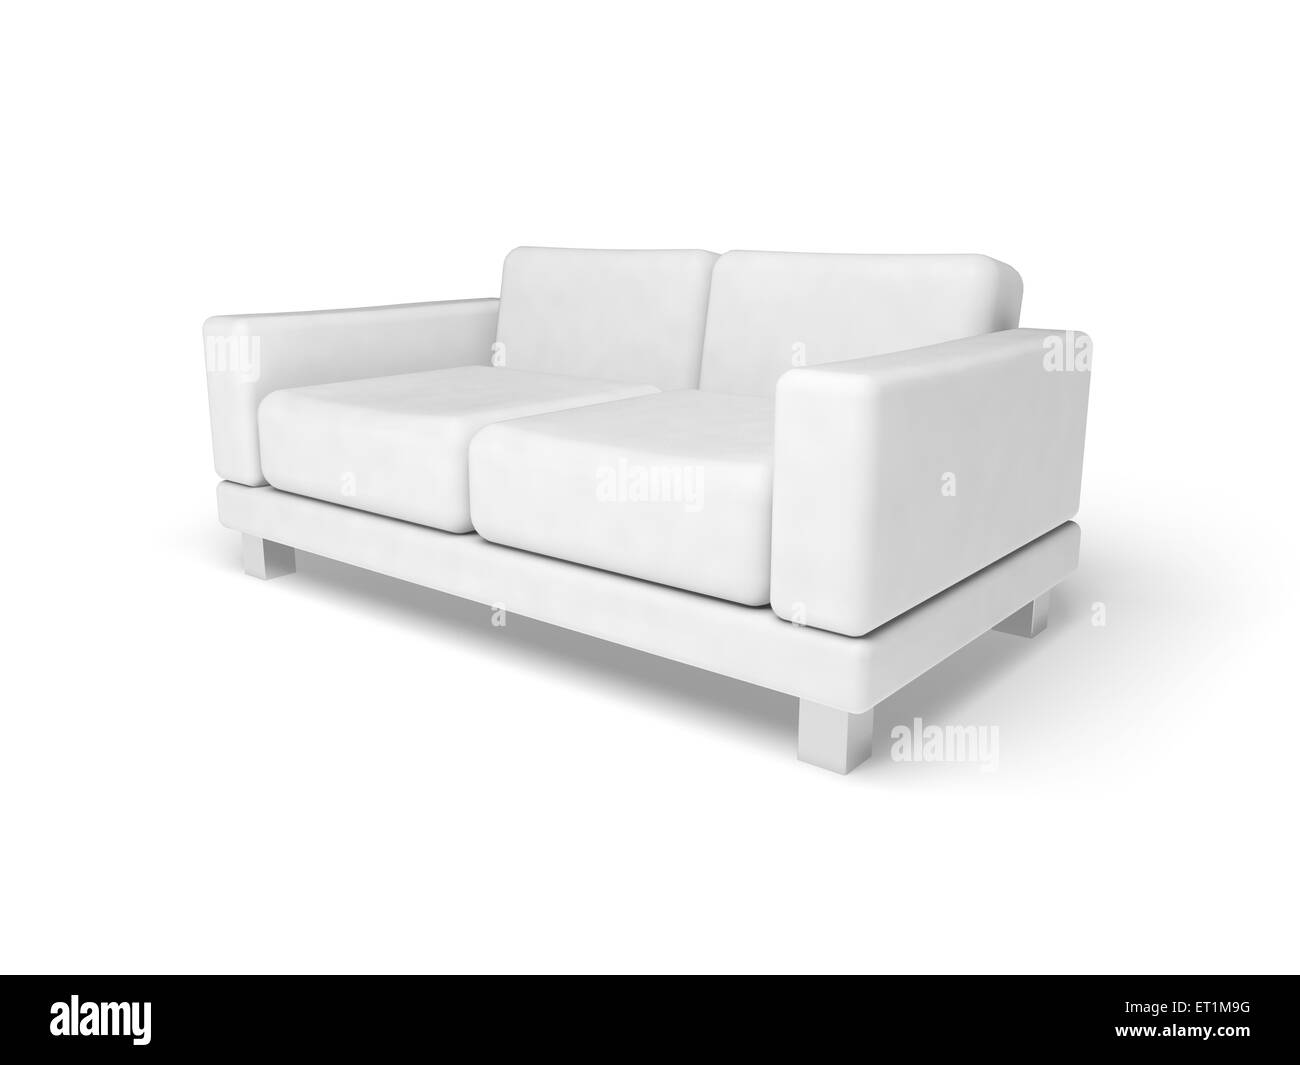 Canapé isolé sur fond blanc marbre vide, 3d illustration, vue en perspective Banque D'Images